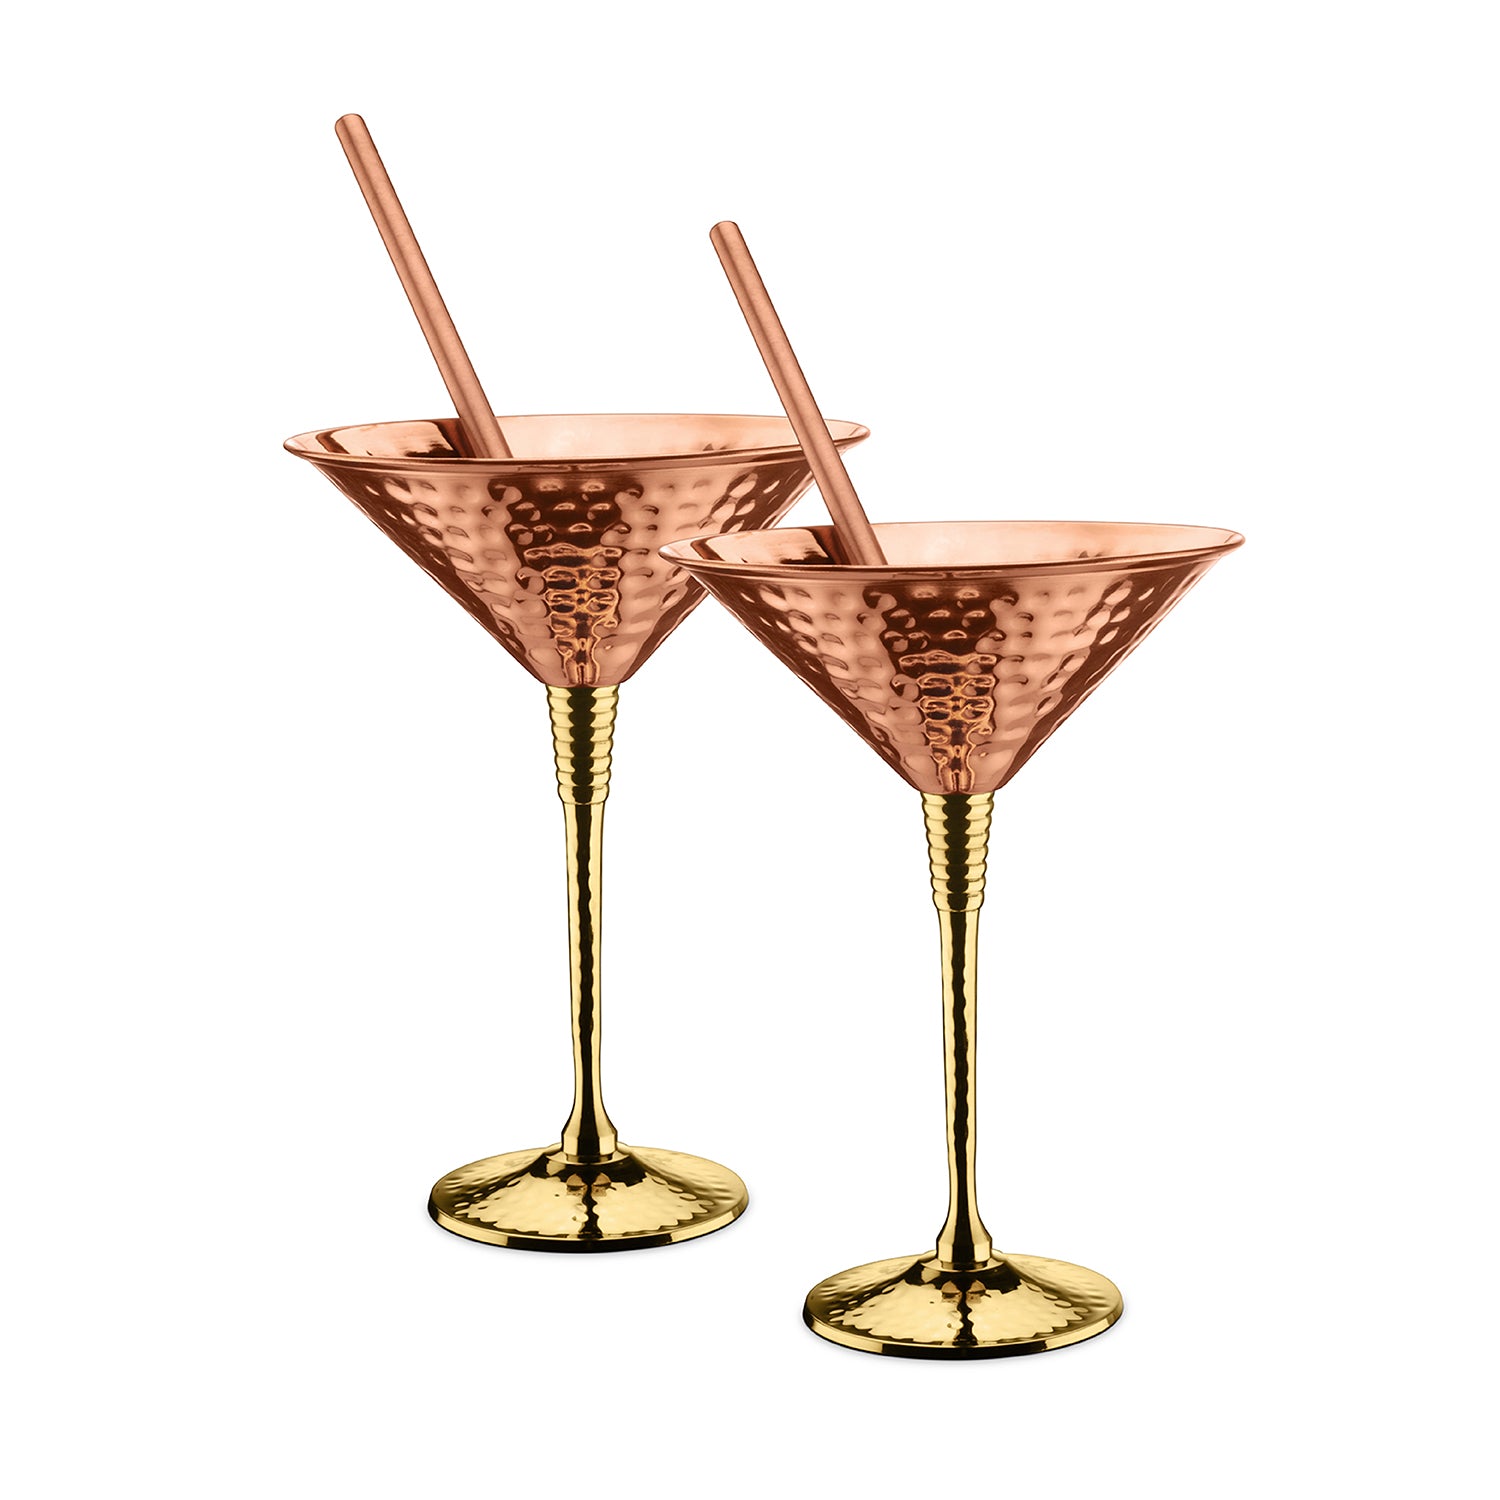 8 oz. Copper Coated Martini Glasses